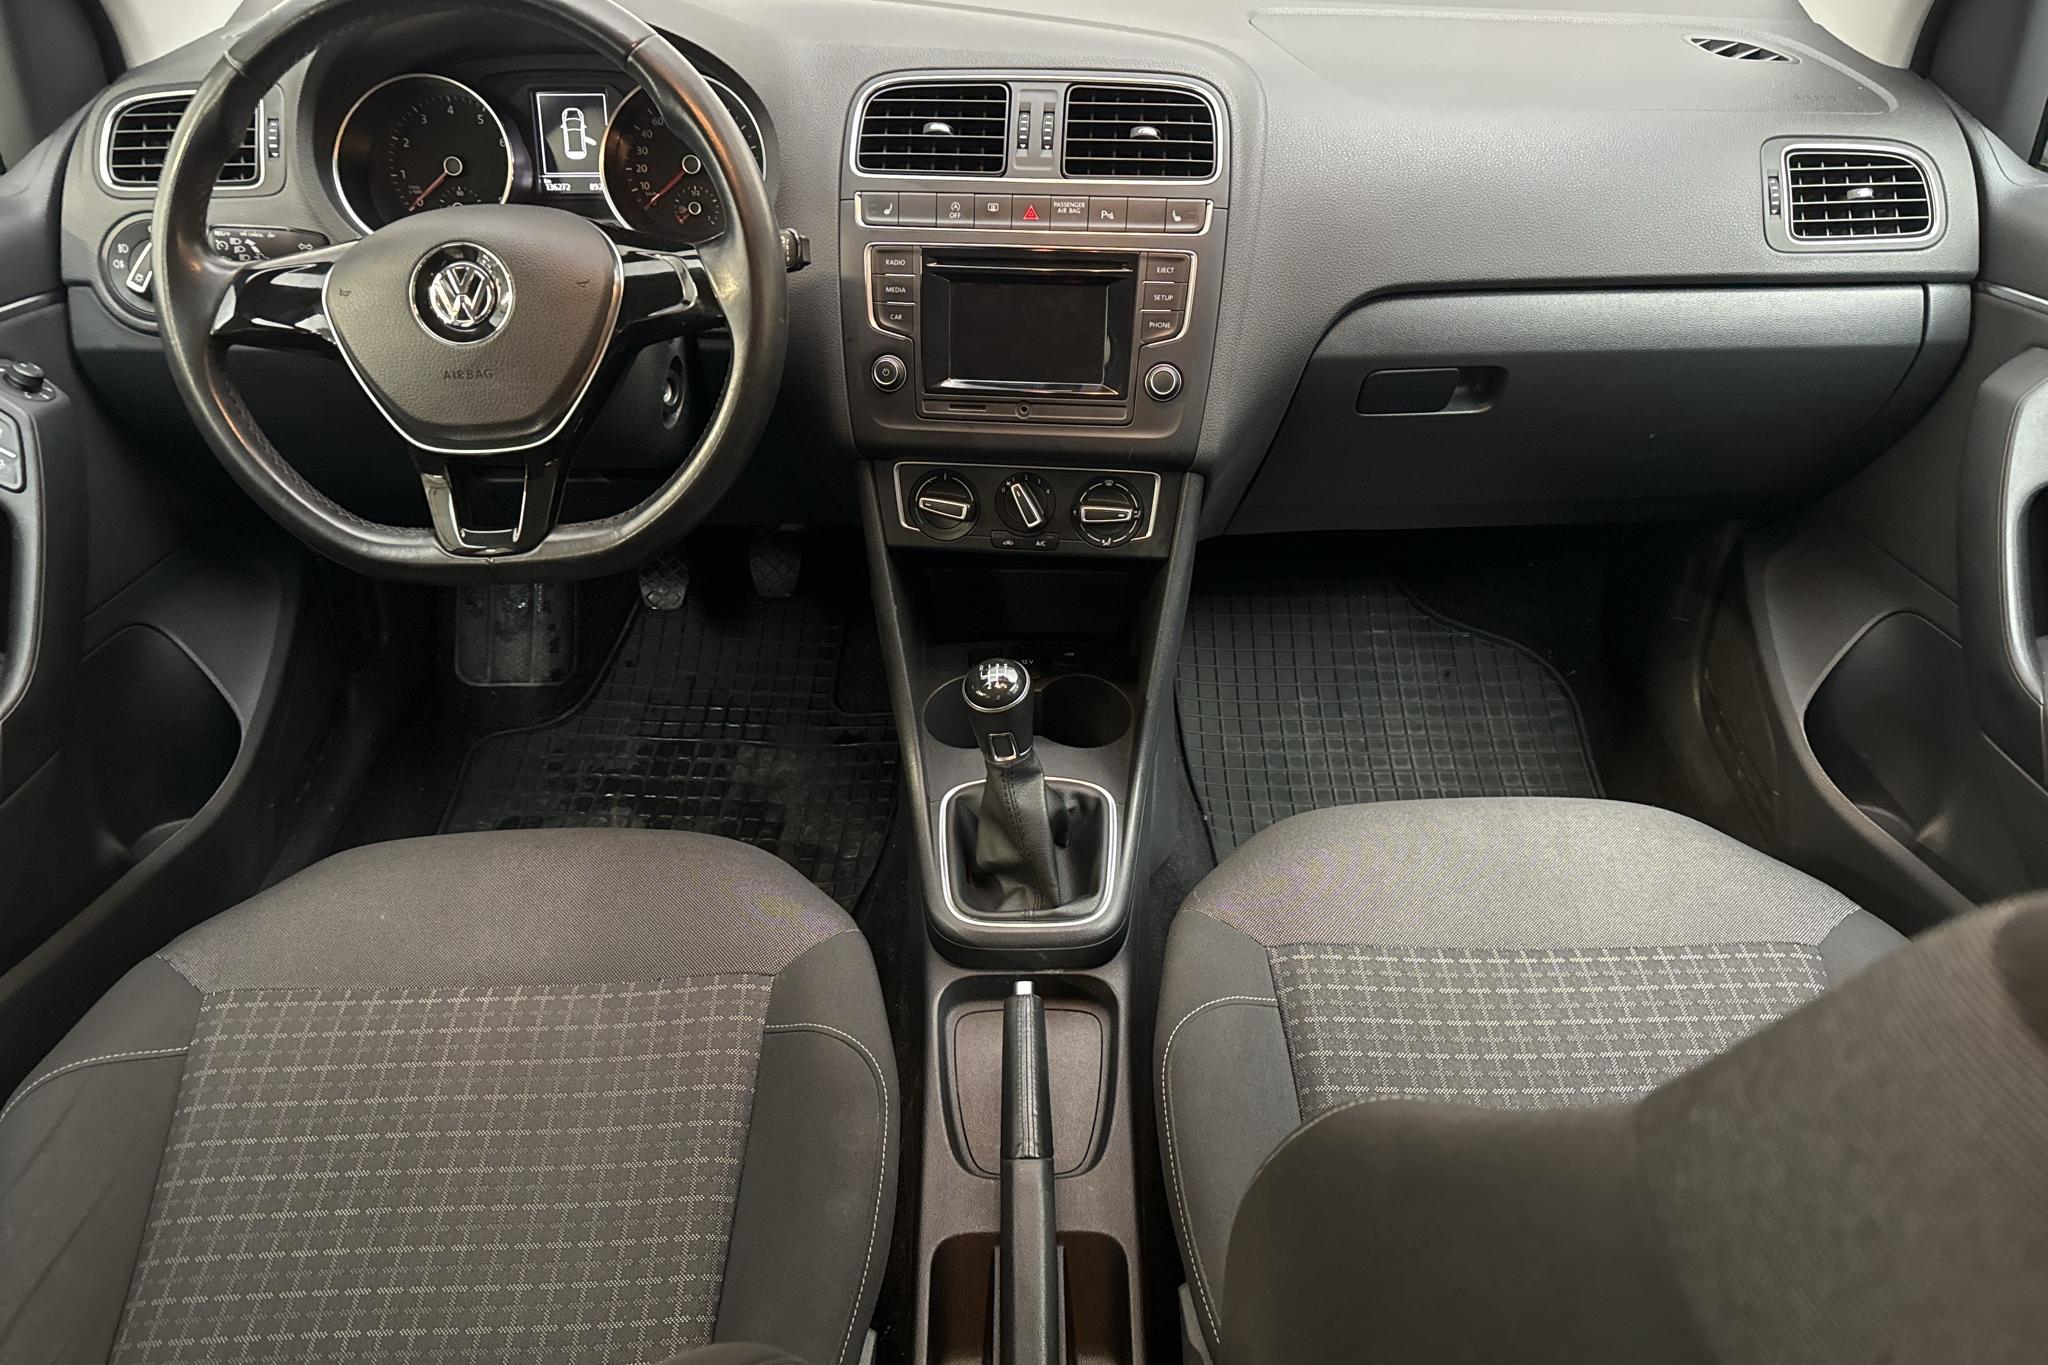 VW Polo 1.2 TSI 5dr (90hk) - 13 626 mil - Manuell - blå - 2015